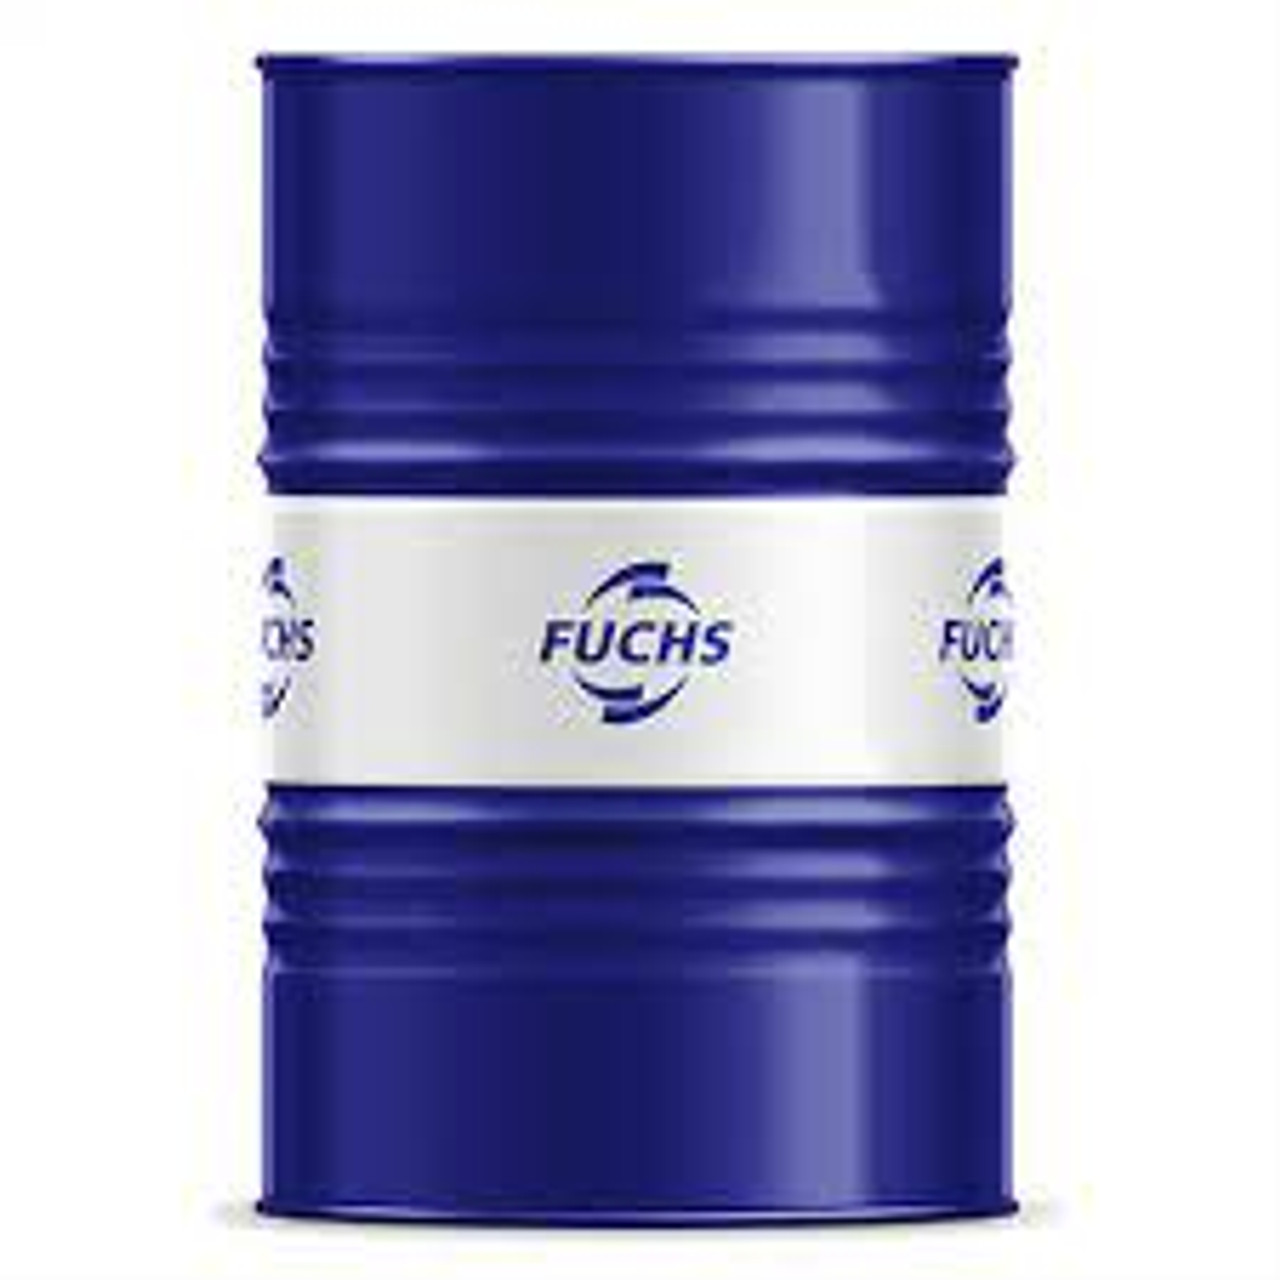 Fuchs Renolin Unisyn OL 46 - 55 Gallon Drum